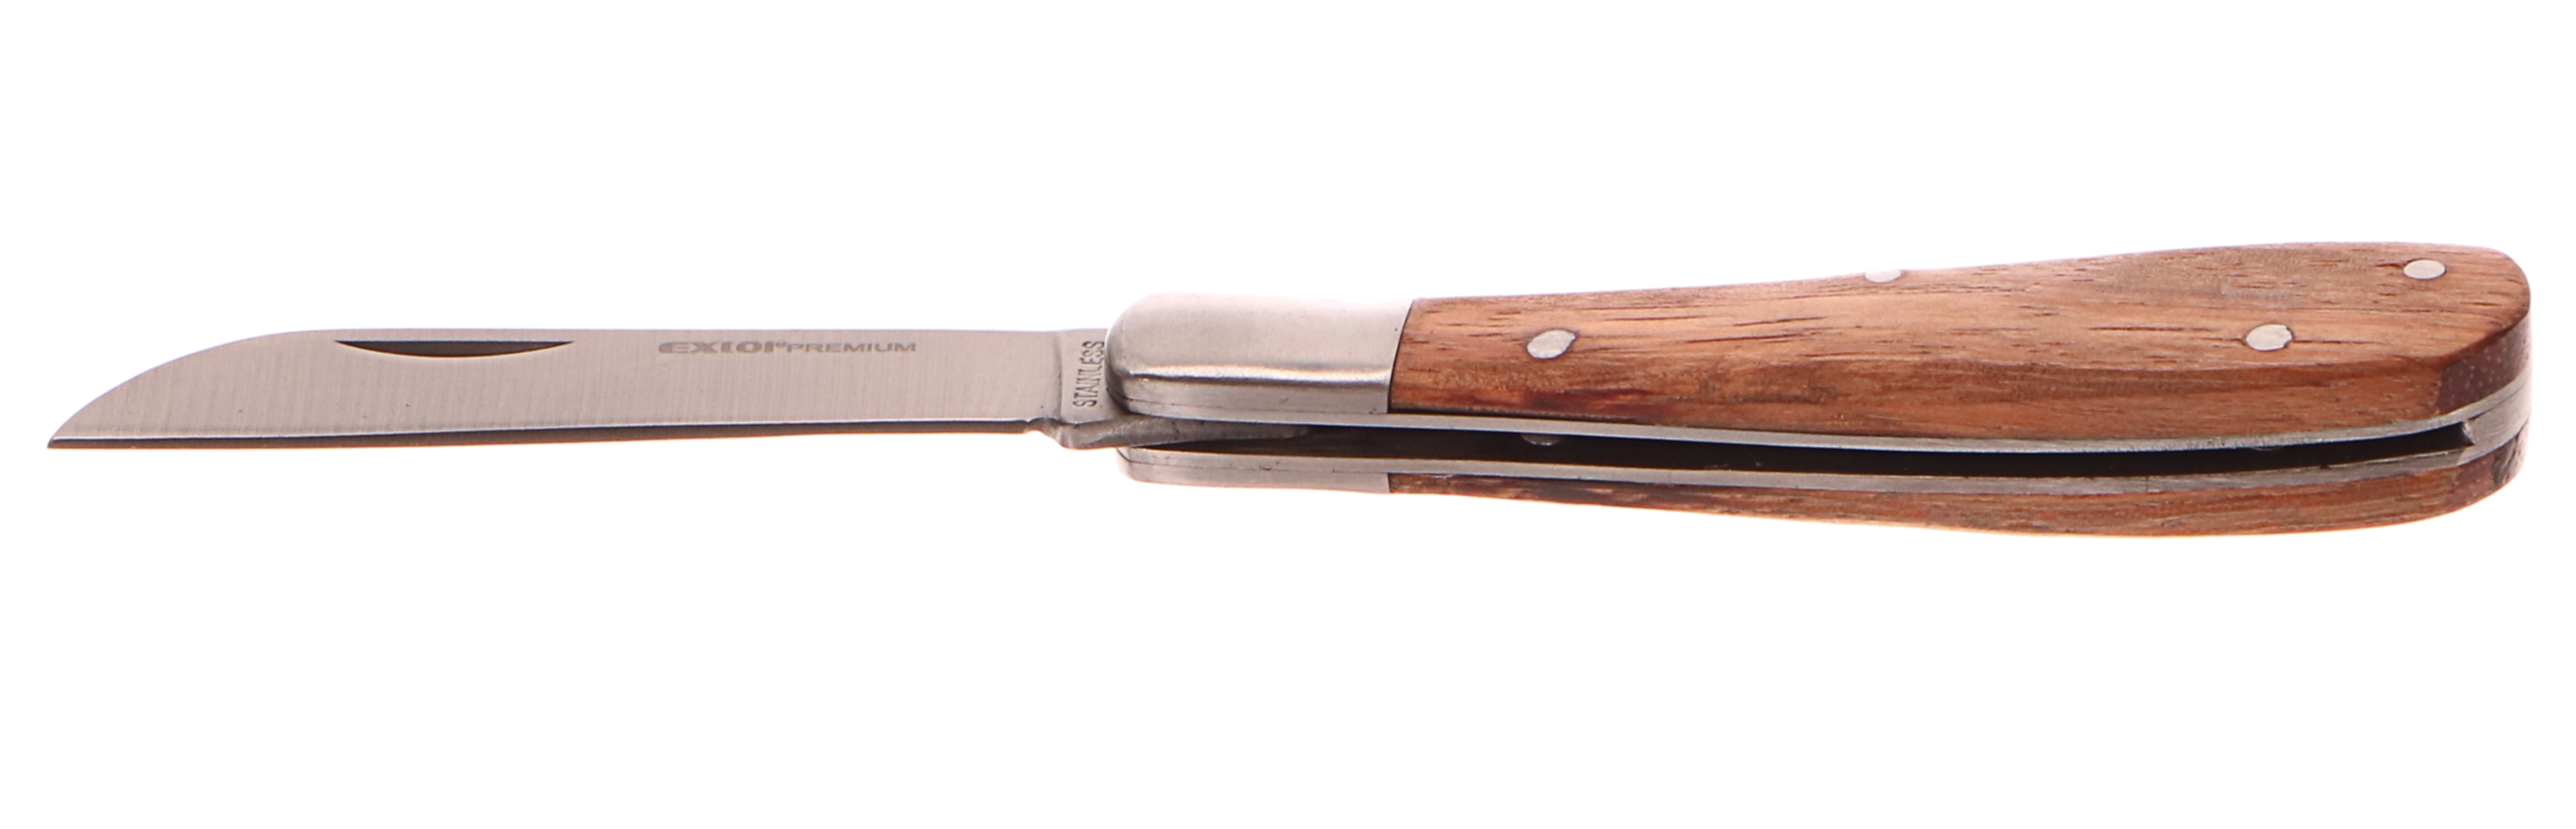 Nůž roubovací zavírací nerez, 170/100mm, délka otevřeného nože 170mm, EXTOL PREMIUM